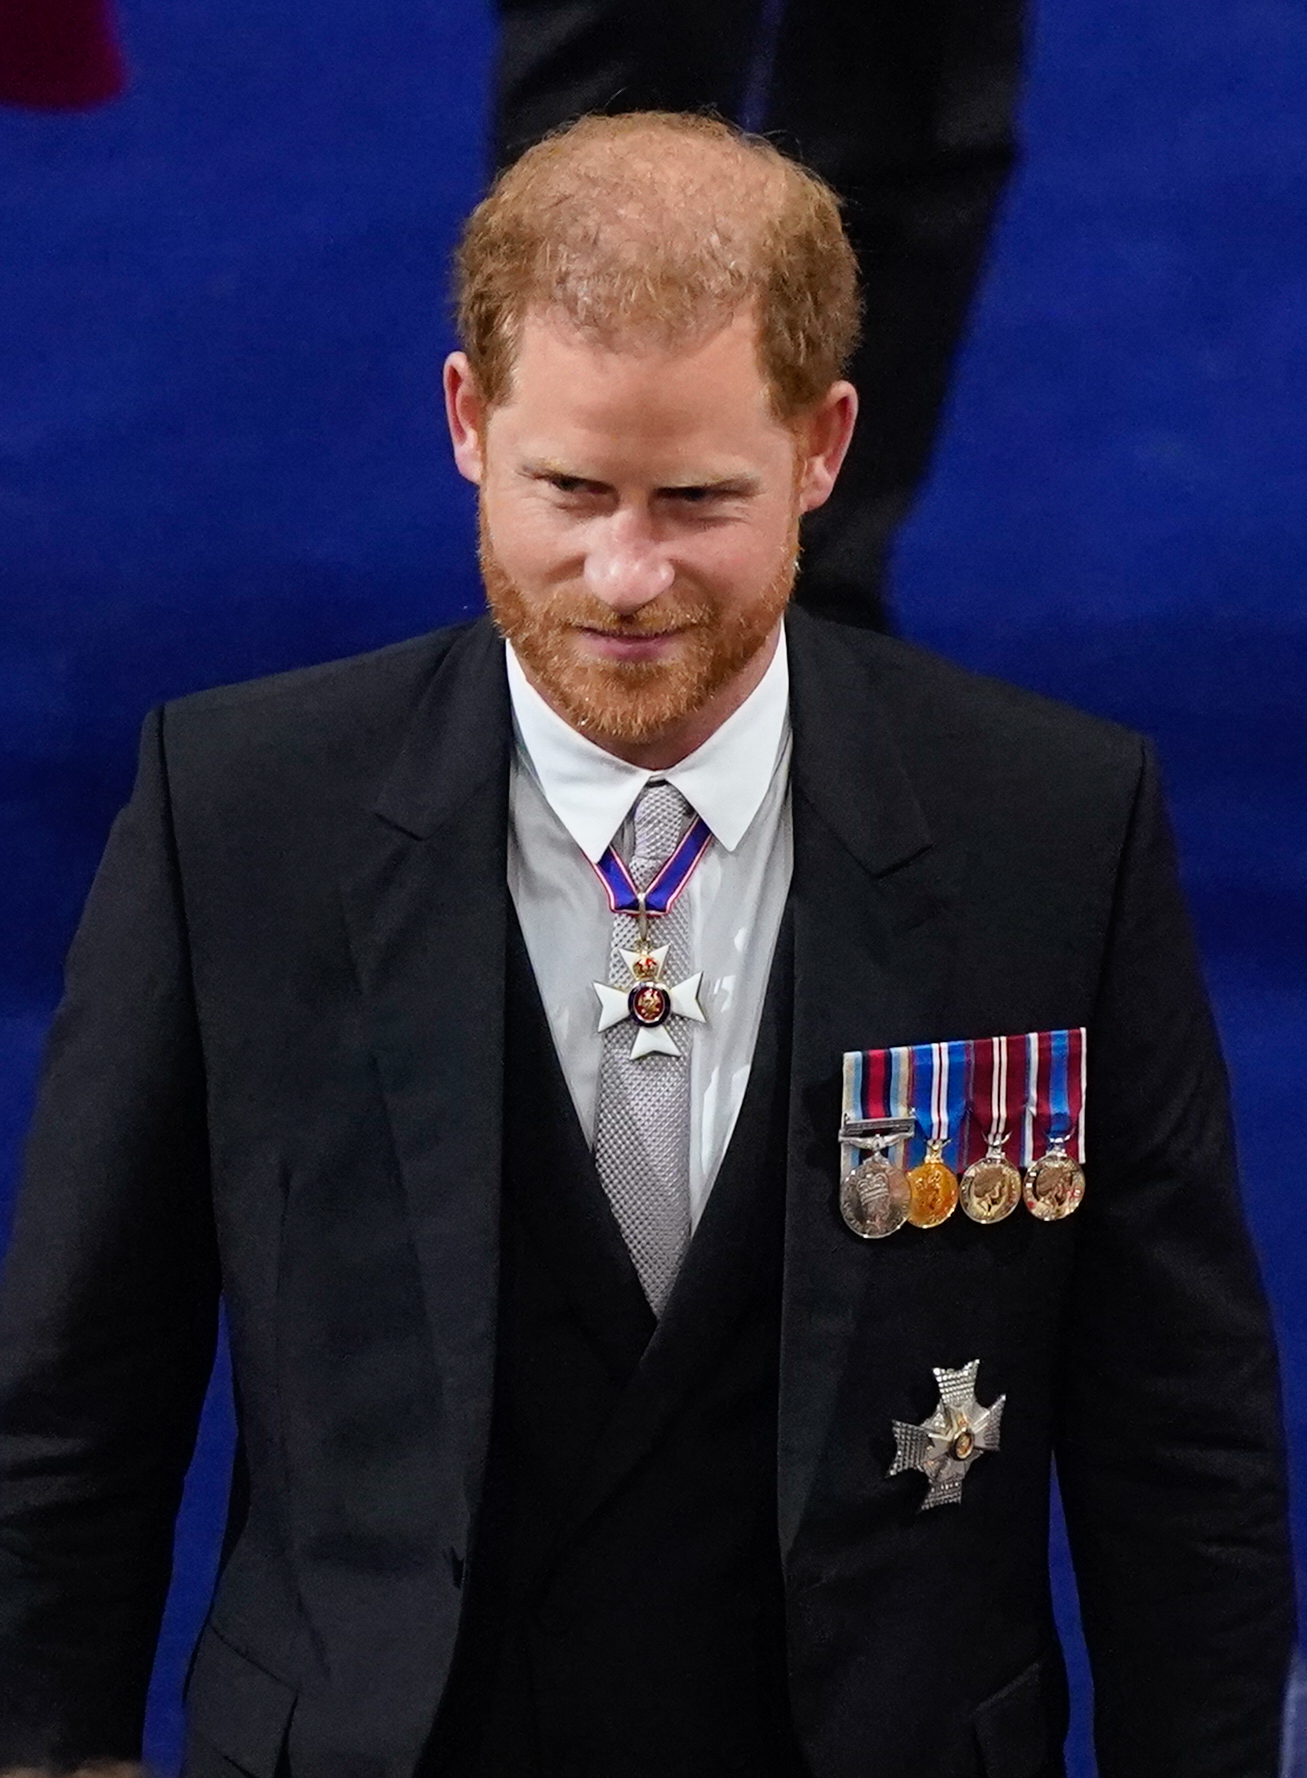 El príncipe Harry en la ceremonia de coronación del rey Charles III y la reina Camilla en Londres, Inglaterra, el 6 de mayo de 2023 | Foto: Getty Images